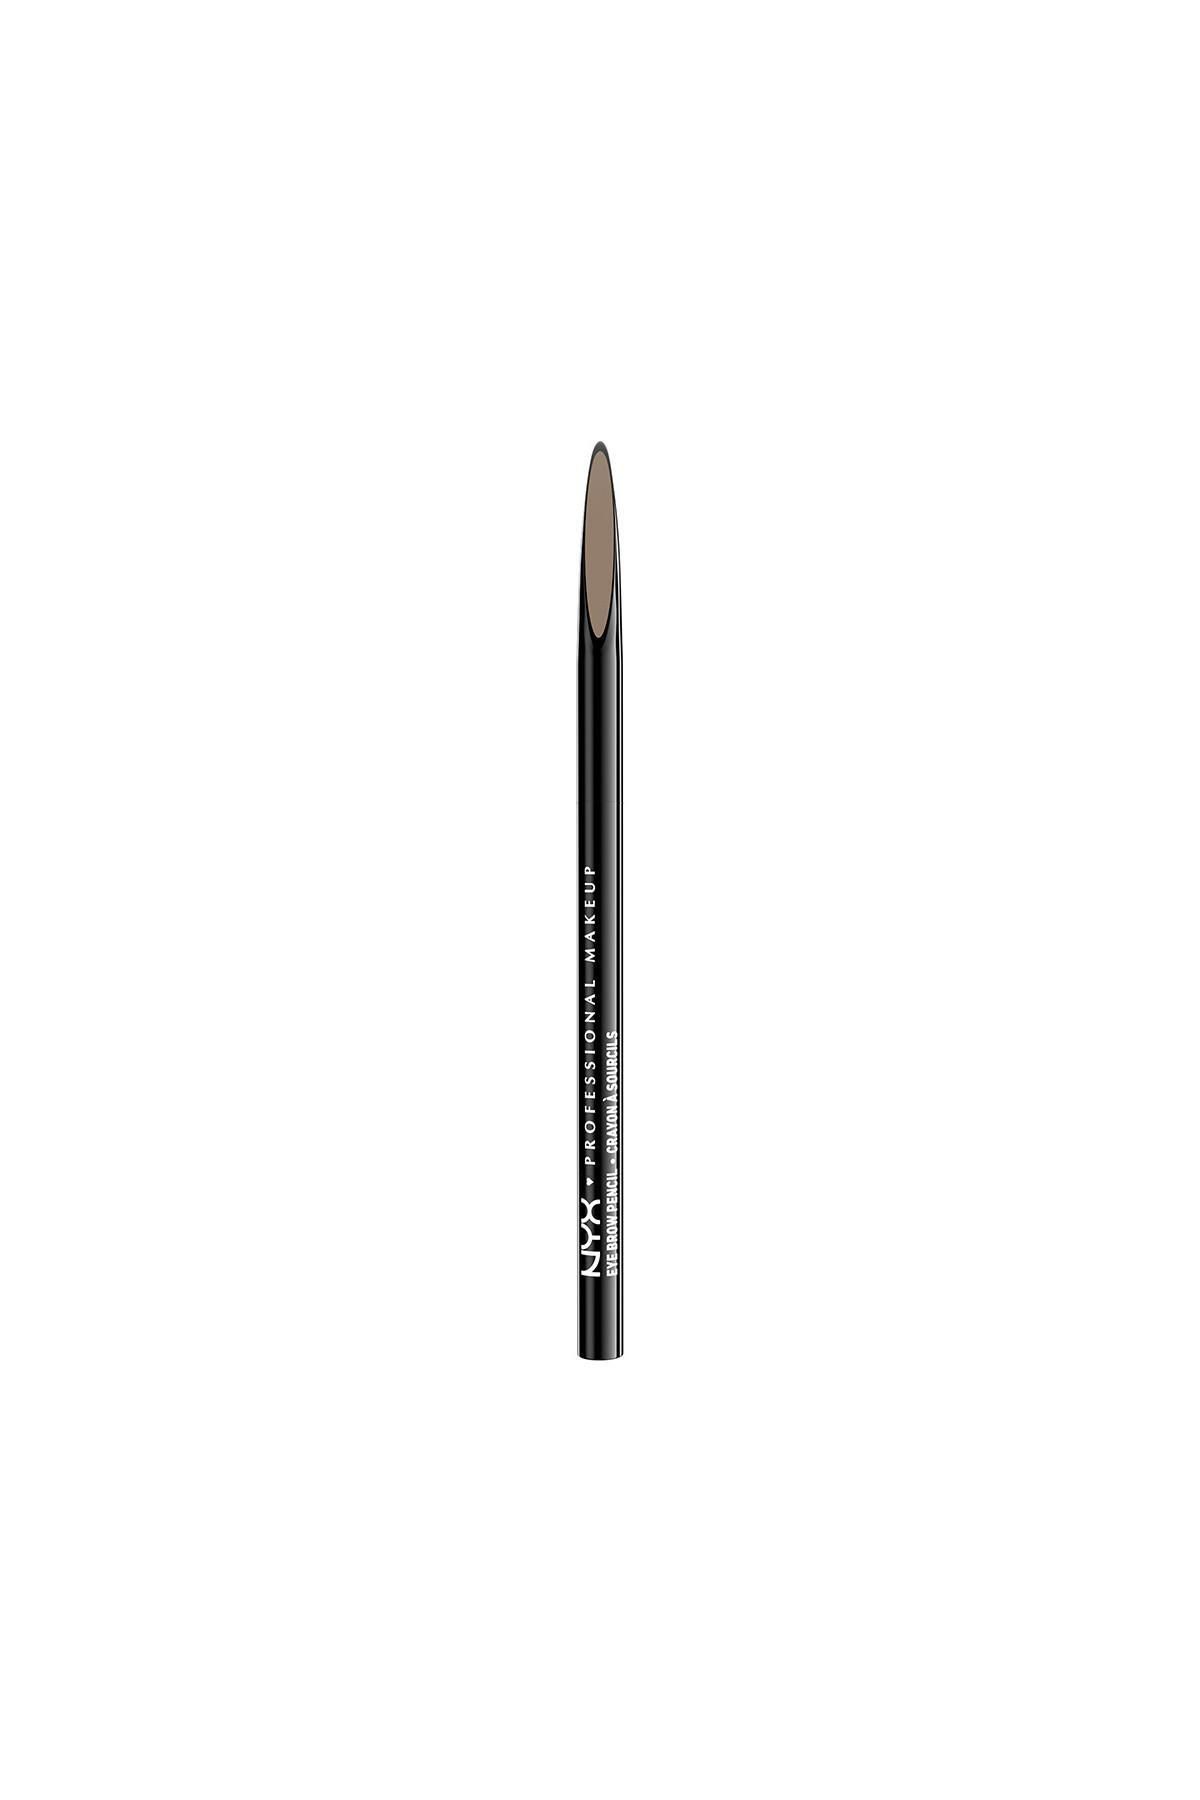 NYX Professional Makeup Kaş Kalemi - Precision Brow Pencil Blonde 800897097257